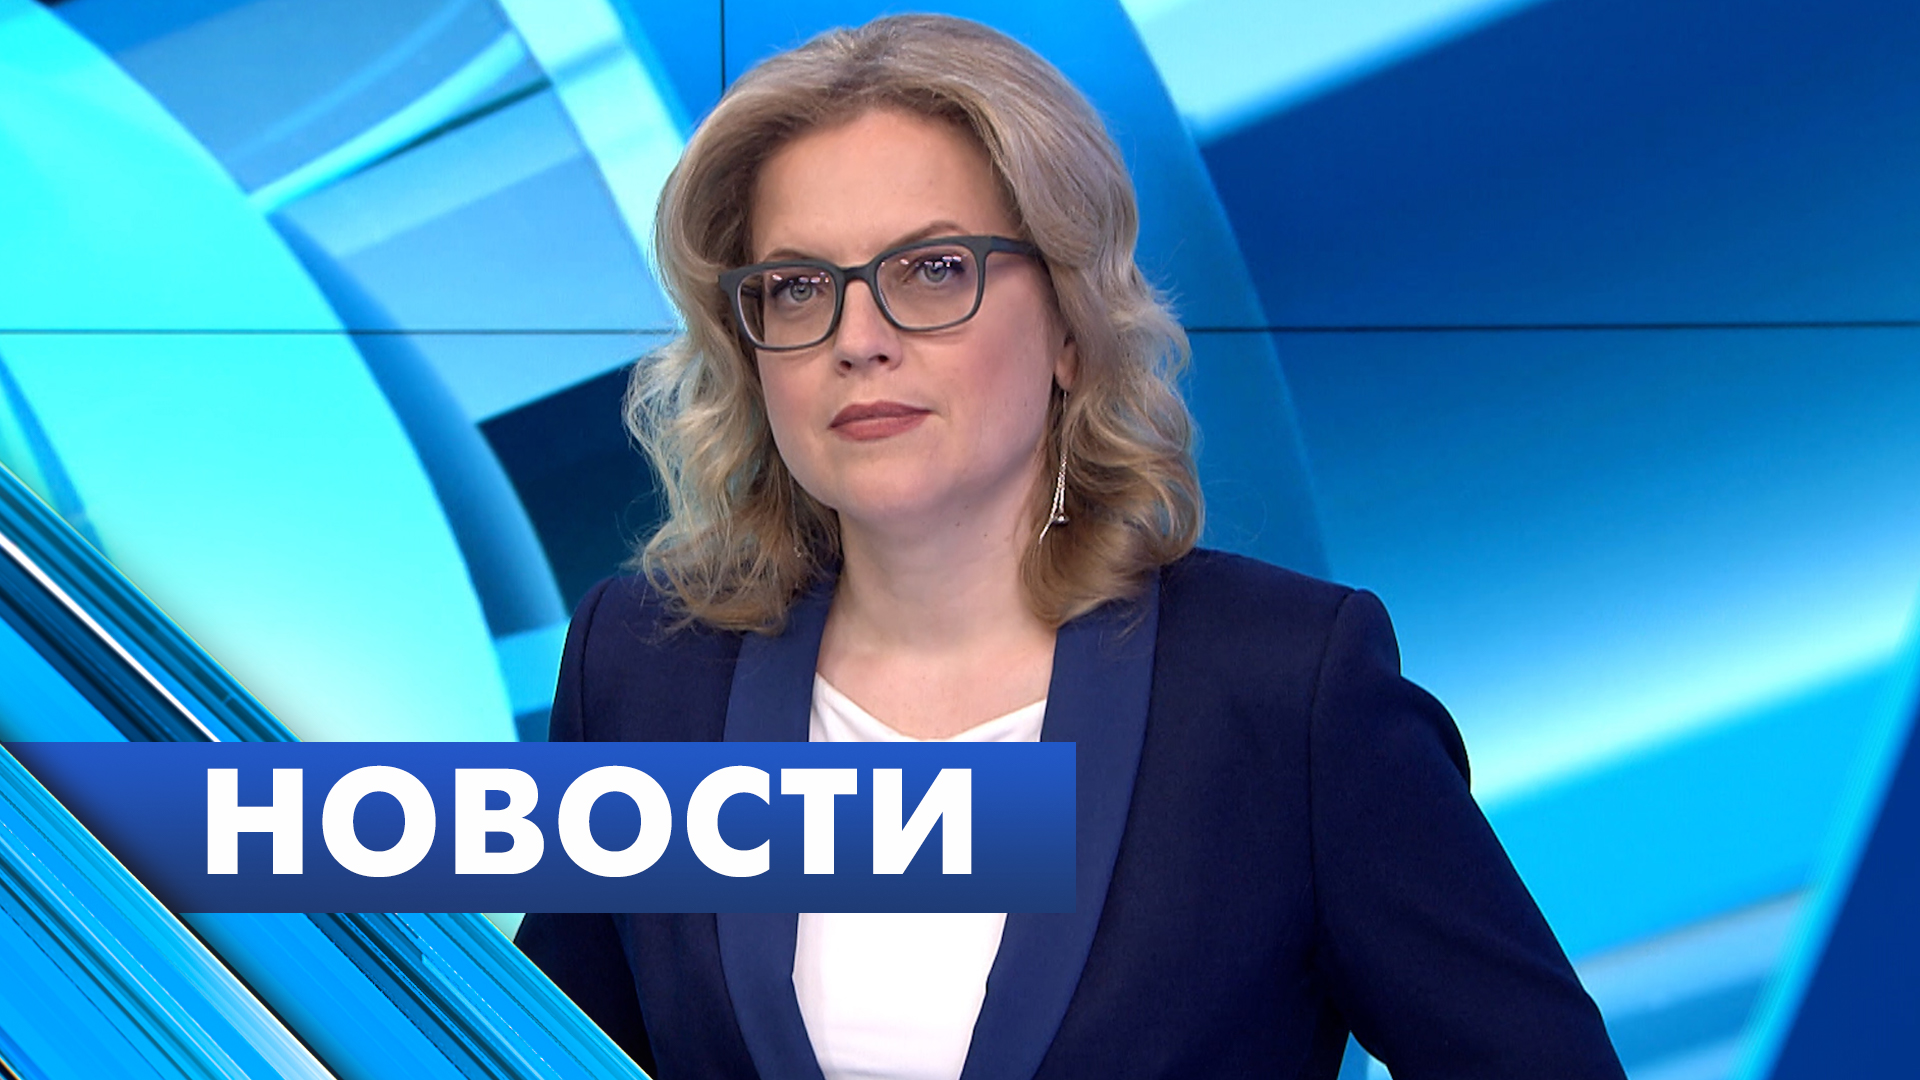 Главные новости Петербурга / 1 июля